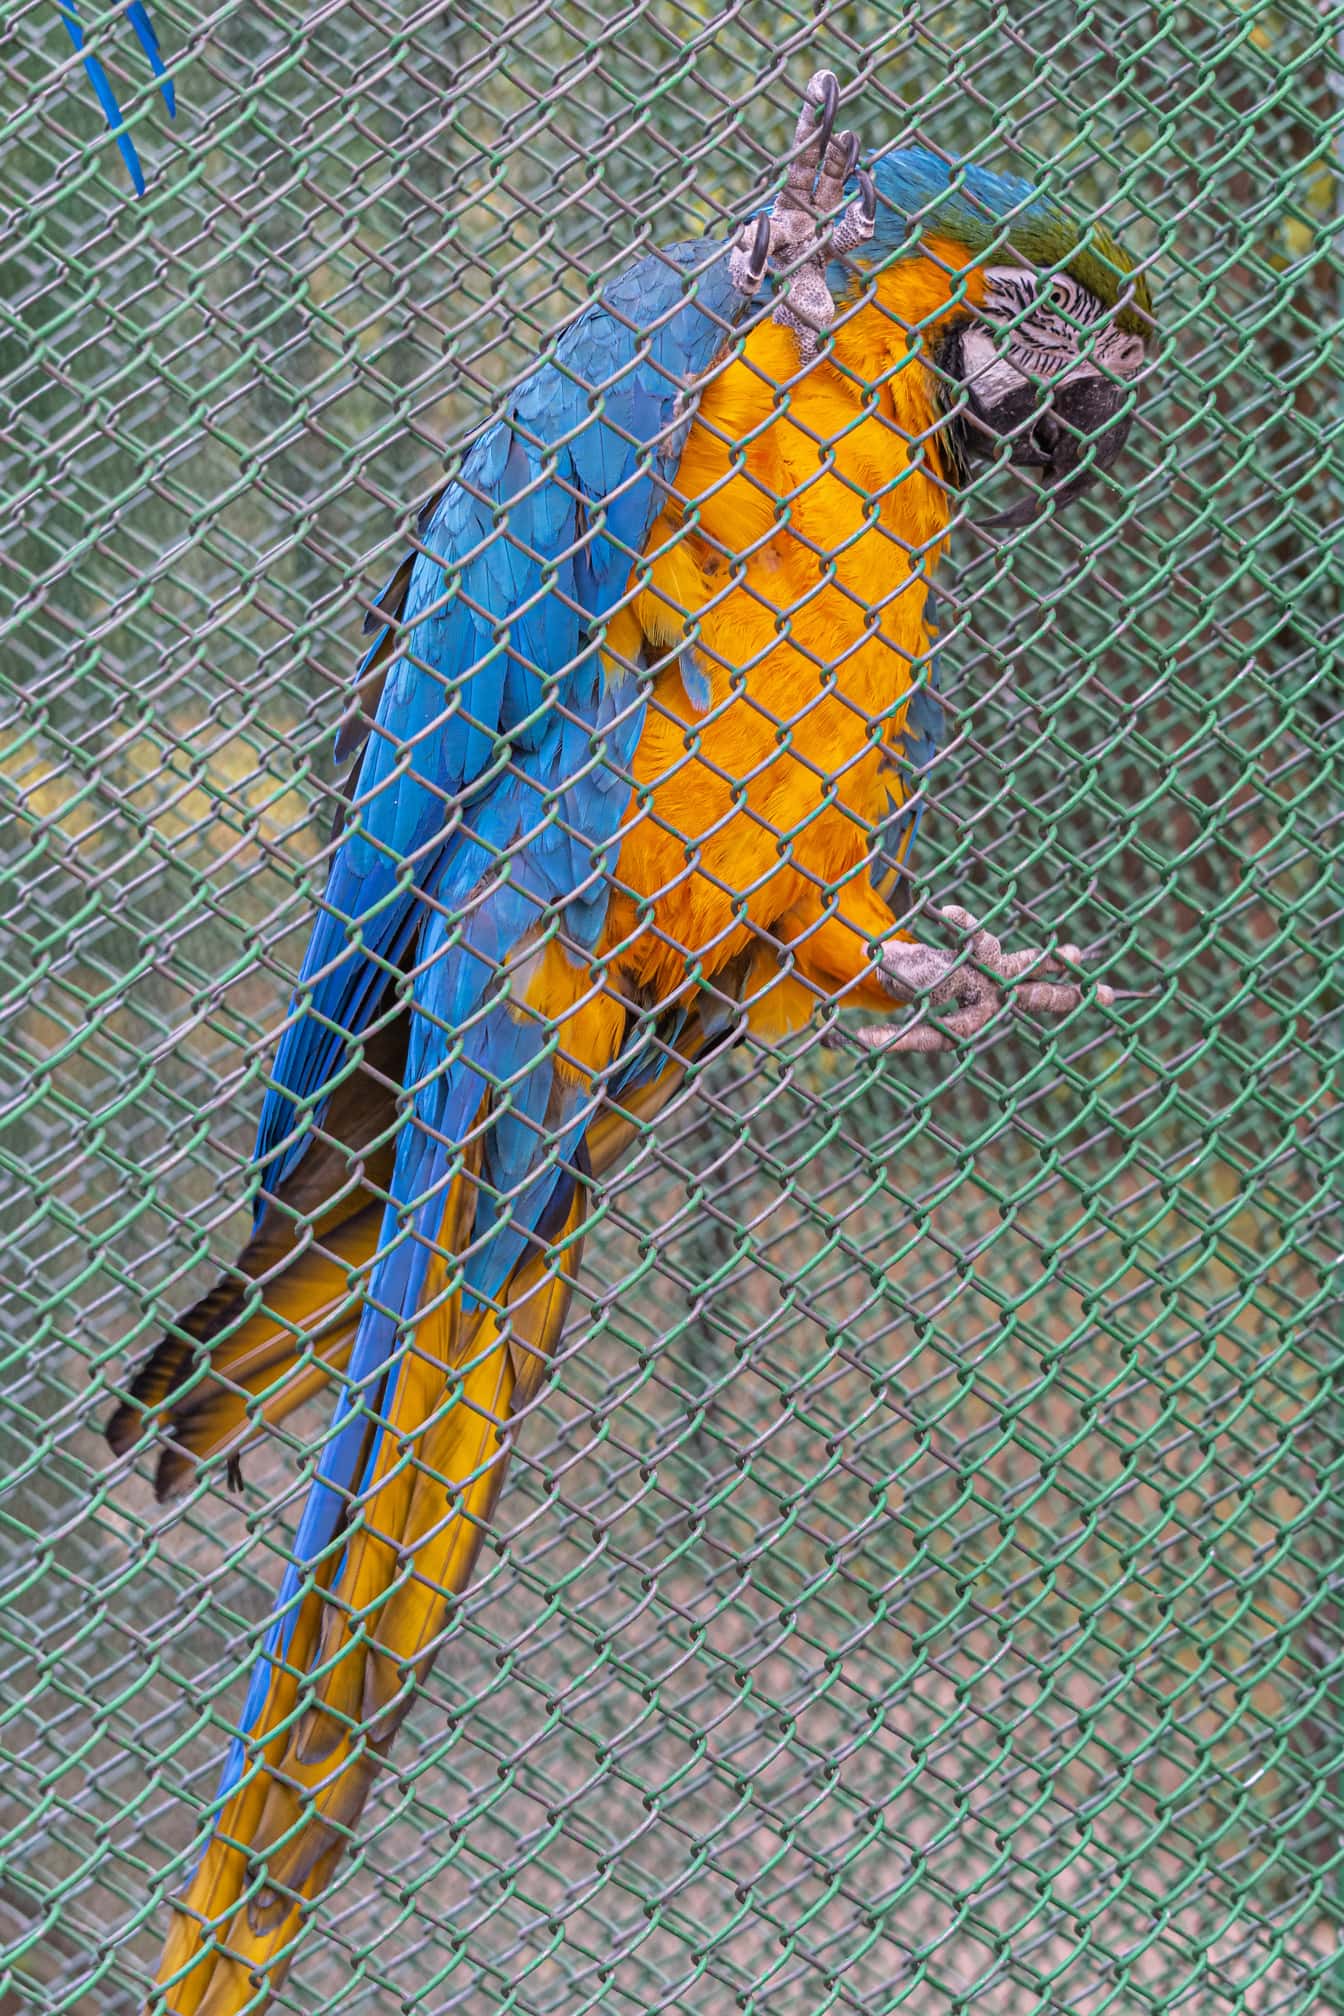 Сине-оранжево-желтый ара (Ara ararauna) птица-попугай на заборе клетки